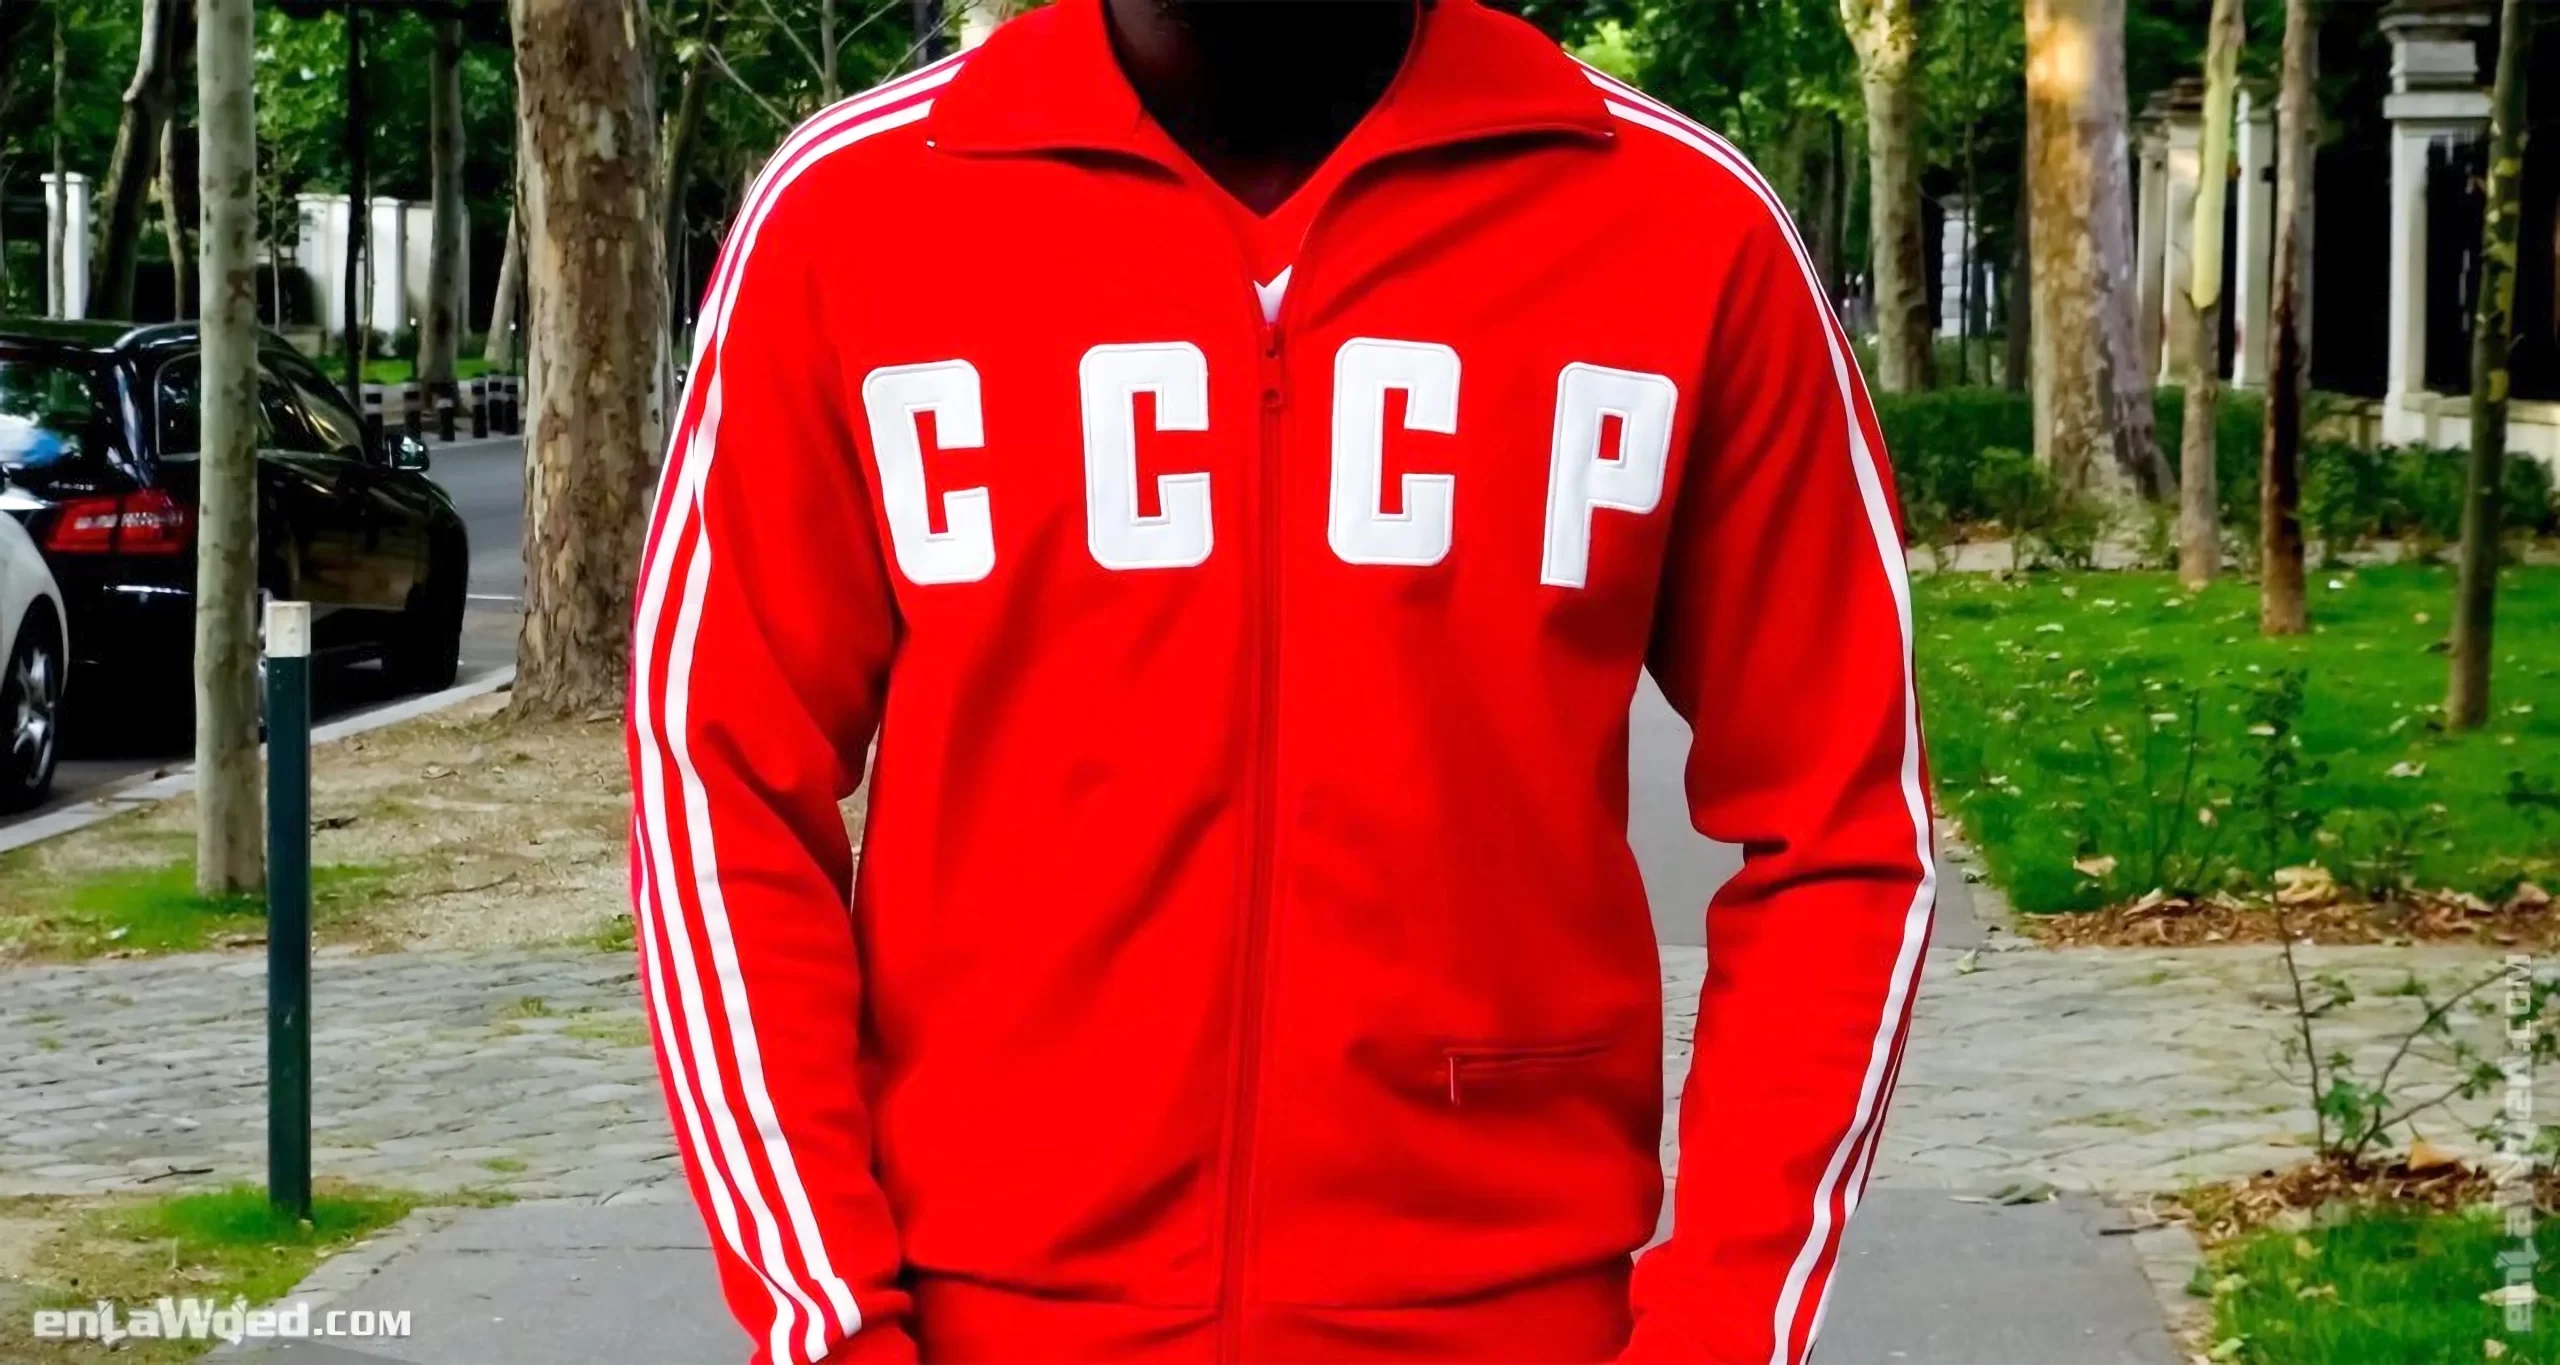 Men’s 2002 Soviet CCCP ’82 TT by Adidas Originals: Epic (EnLawded.com file #lmc5408sif41wzwzwd9)